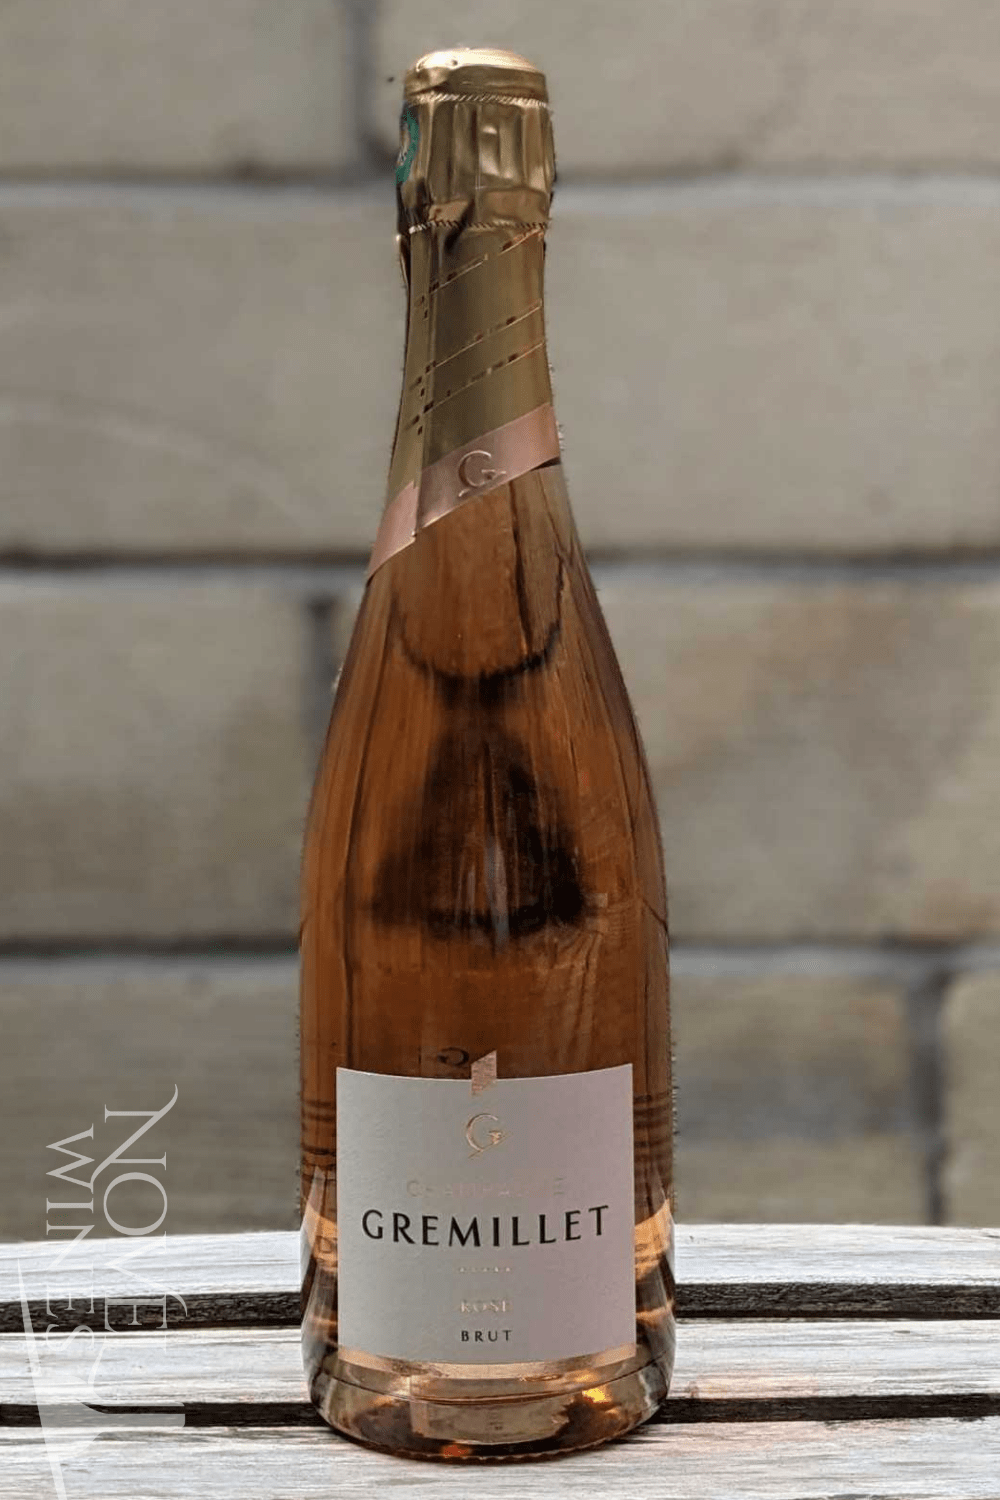 Rose　NV,　Brut　France　Champagne　Gremillet